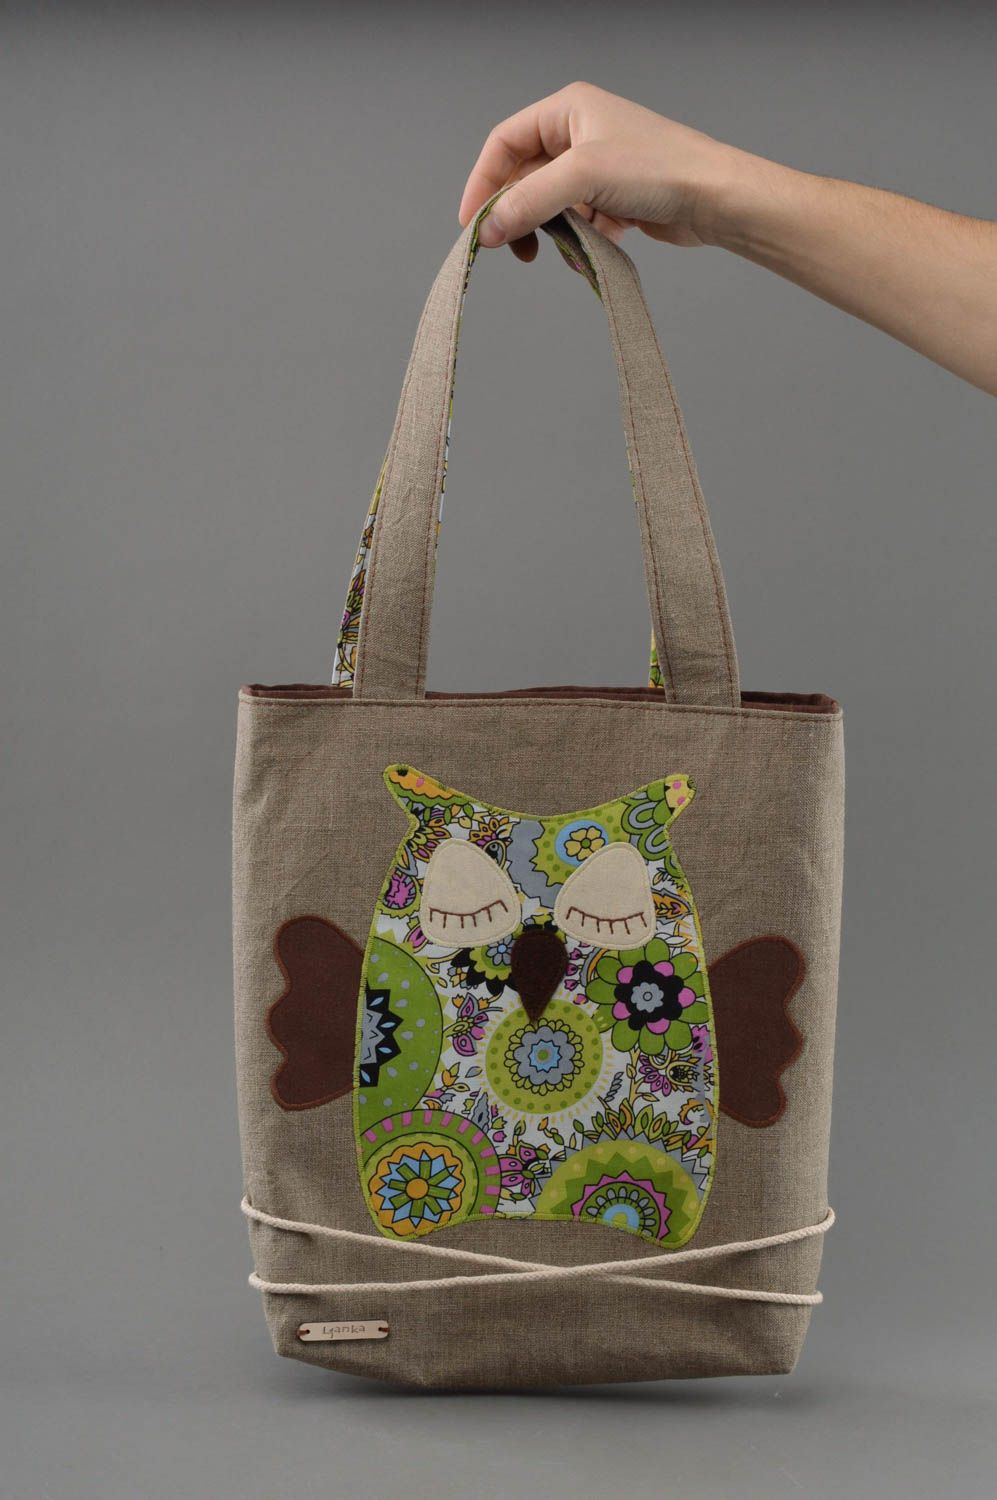 Текстильная сумка с принтом необычная стильная для маленьких и взрослых модниц фото 4